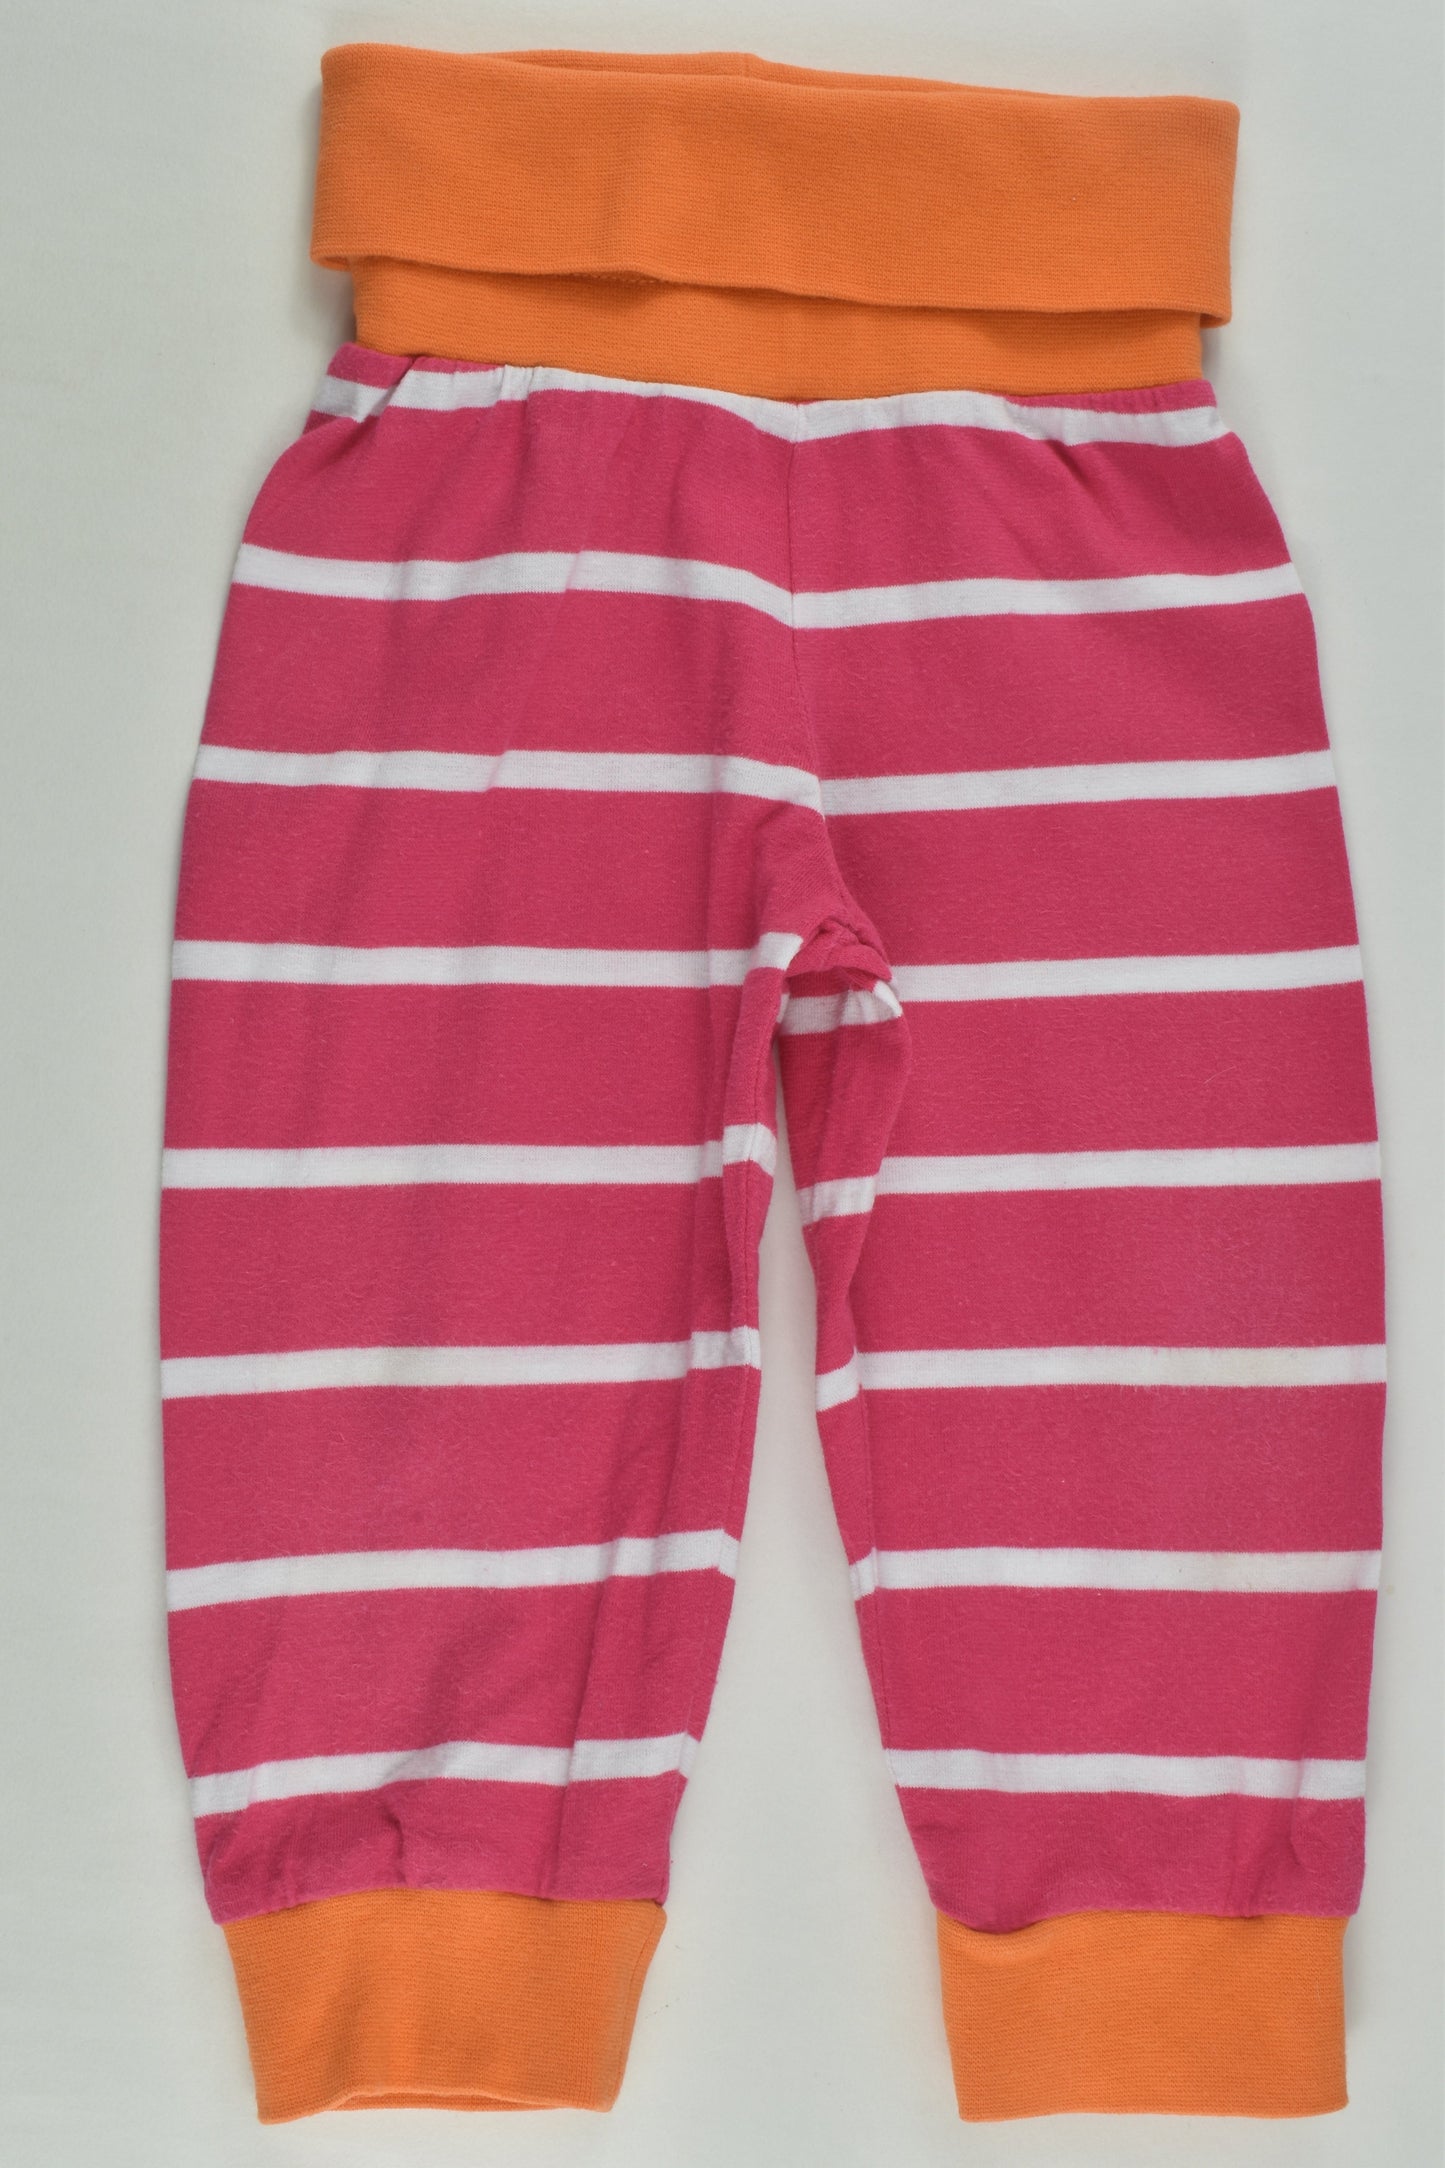 Finnwear Size 00 Striped Pants